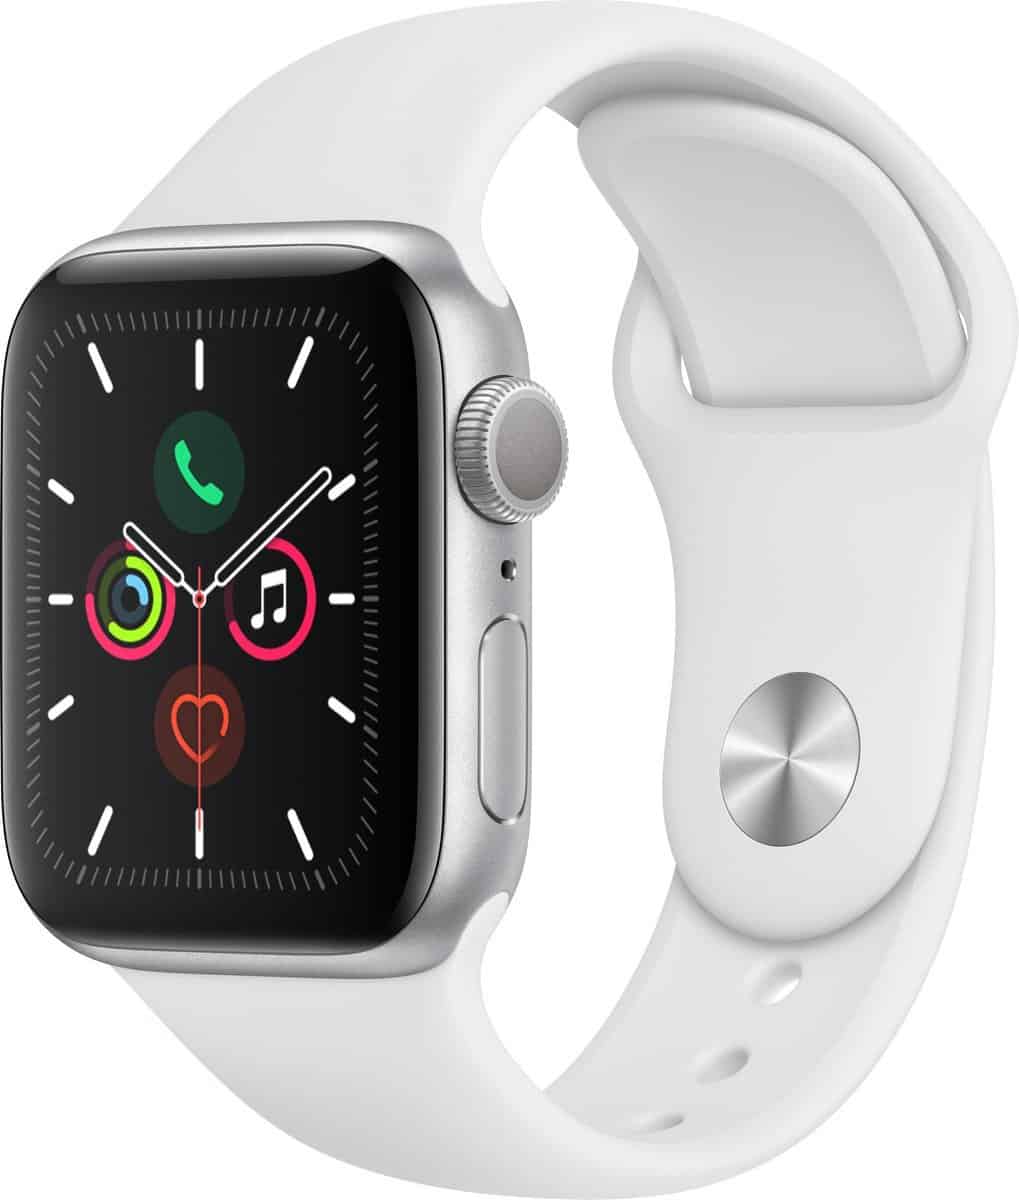 Beste Apple smartwatch vorige generatie- Apple Watch Series 5